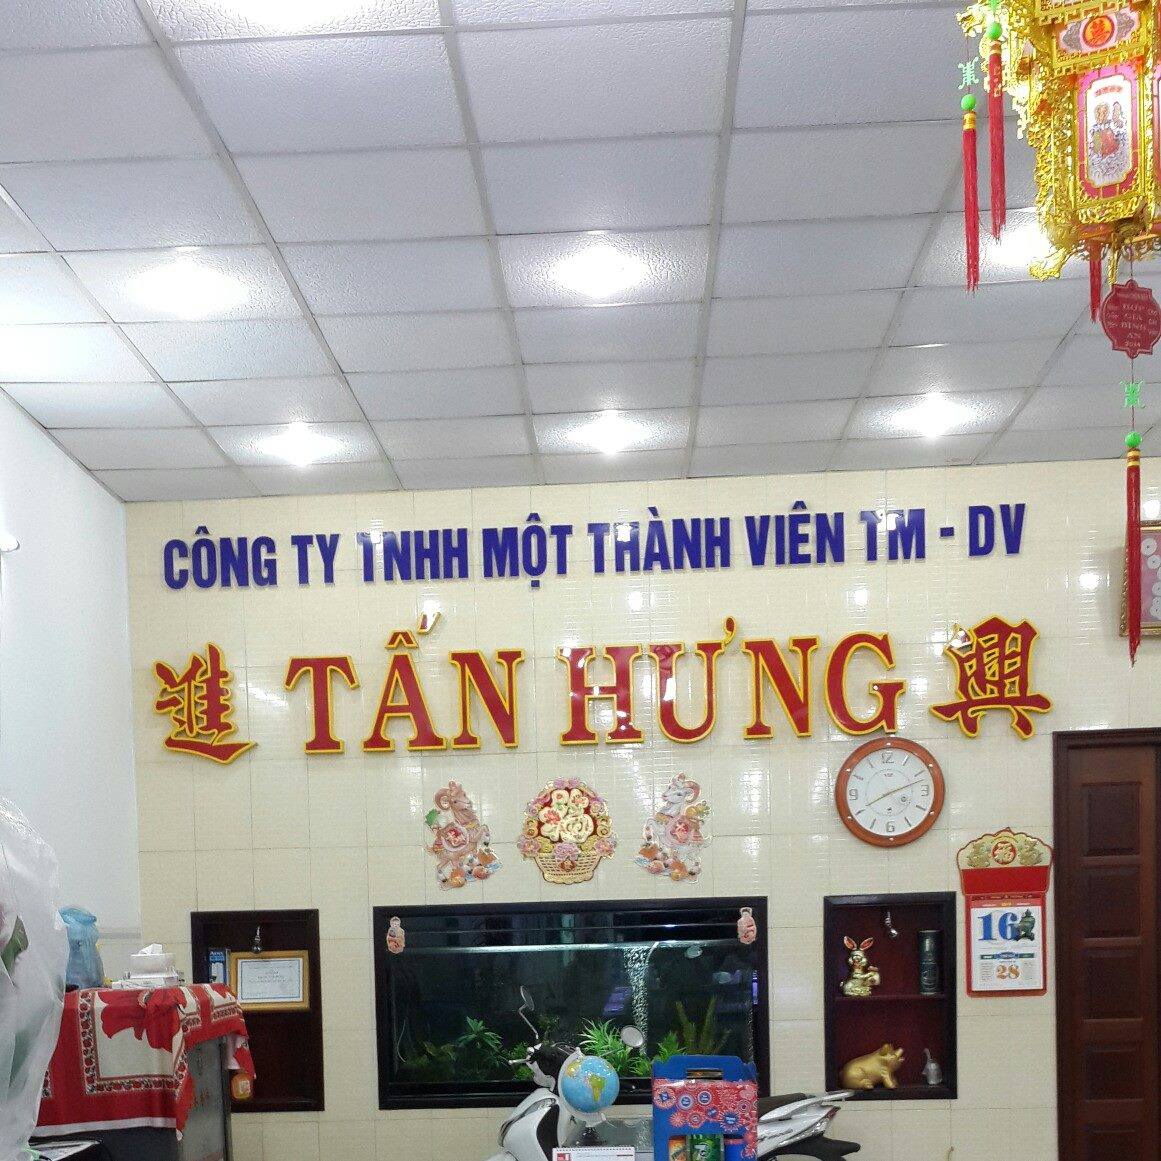 Cửa hàng điện thoại Tấn Hưng - Vĩnh Long